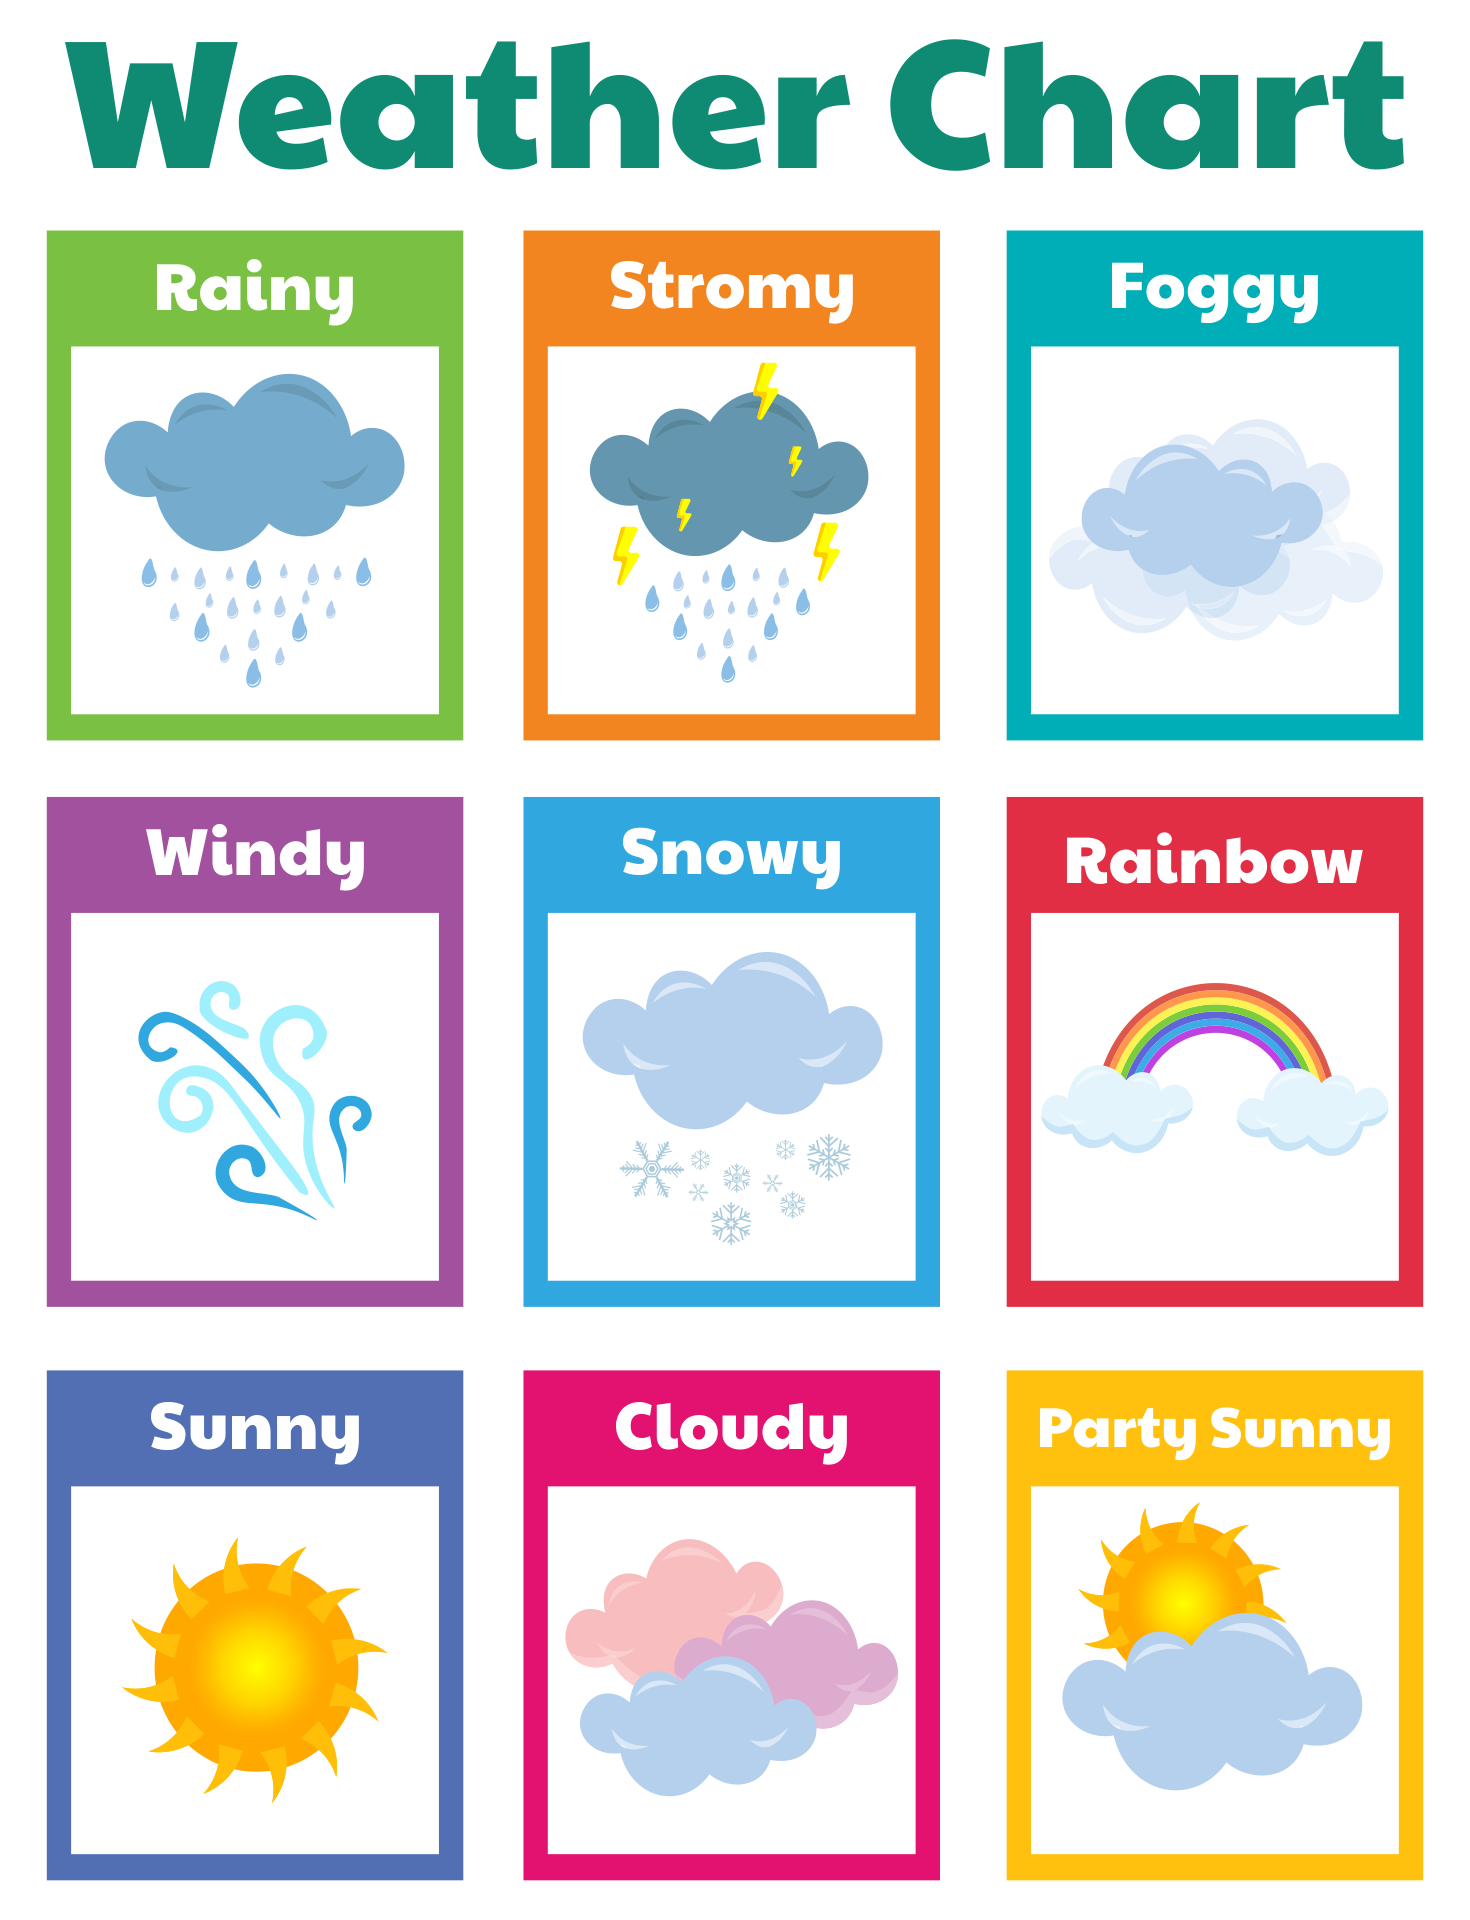 10 Best Printable Weather Chart For Kindergarten